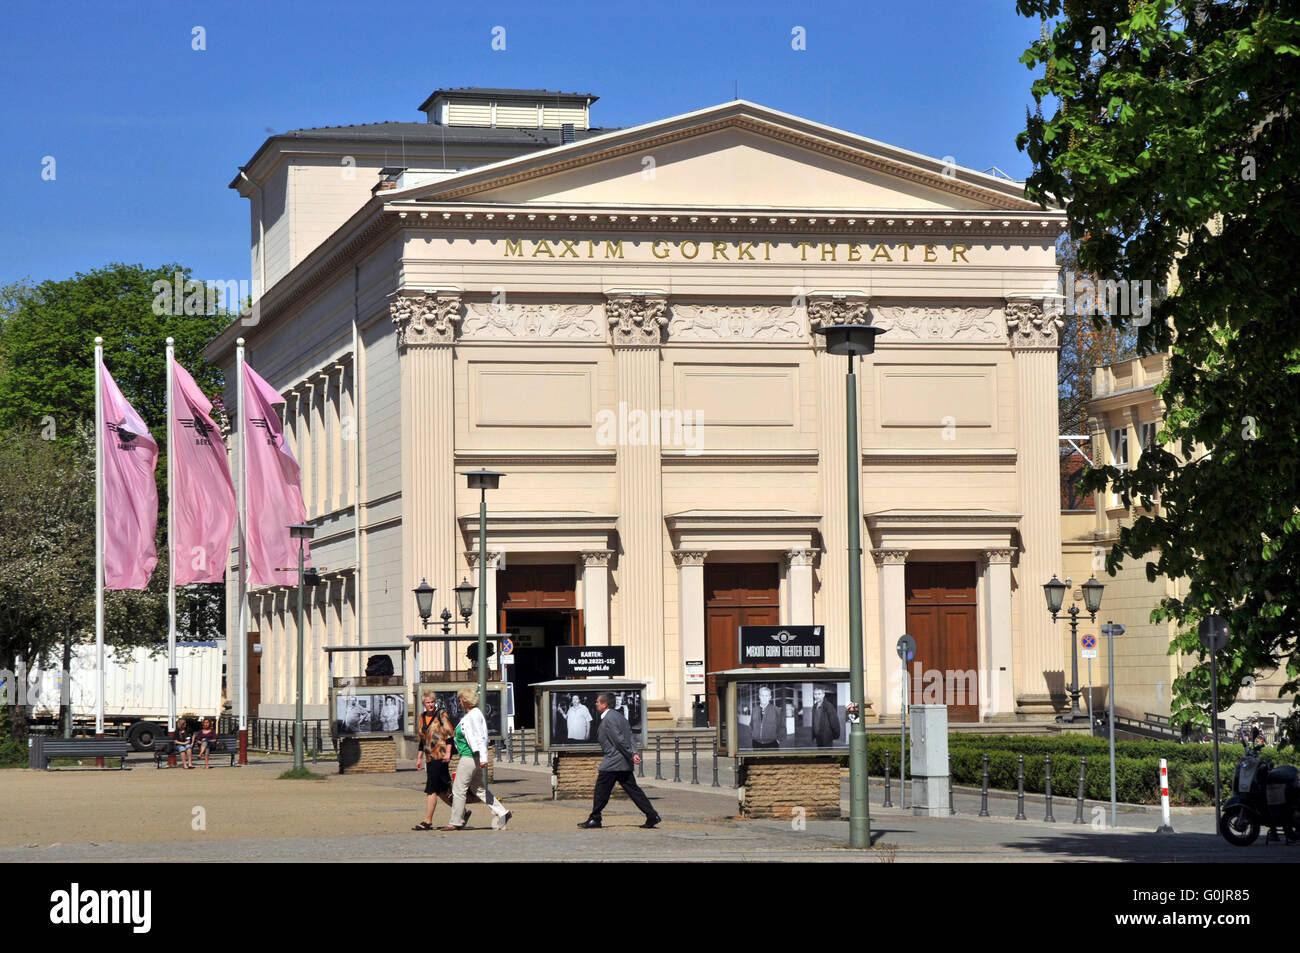 Maxim Gorki Theater am Festungsgraben, nel quartiere Mitte di Berlino, Germania / Maxim-Gorki-theatre Foto Stock